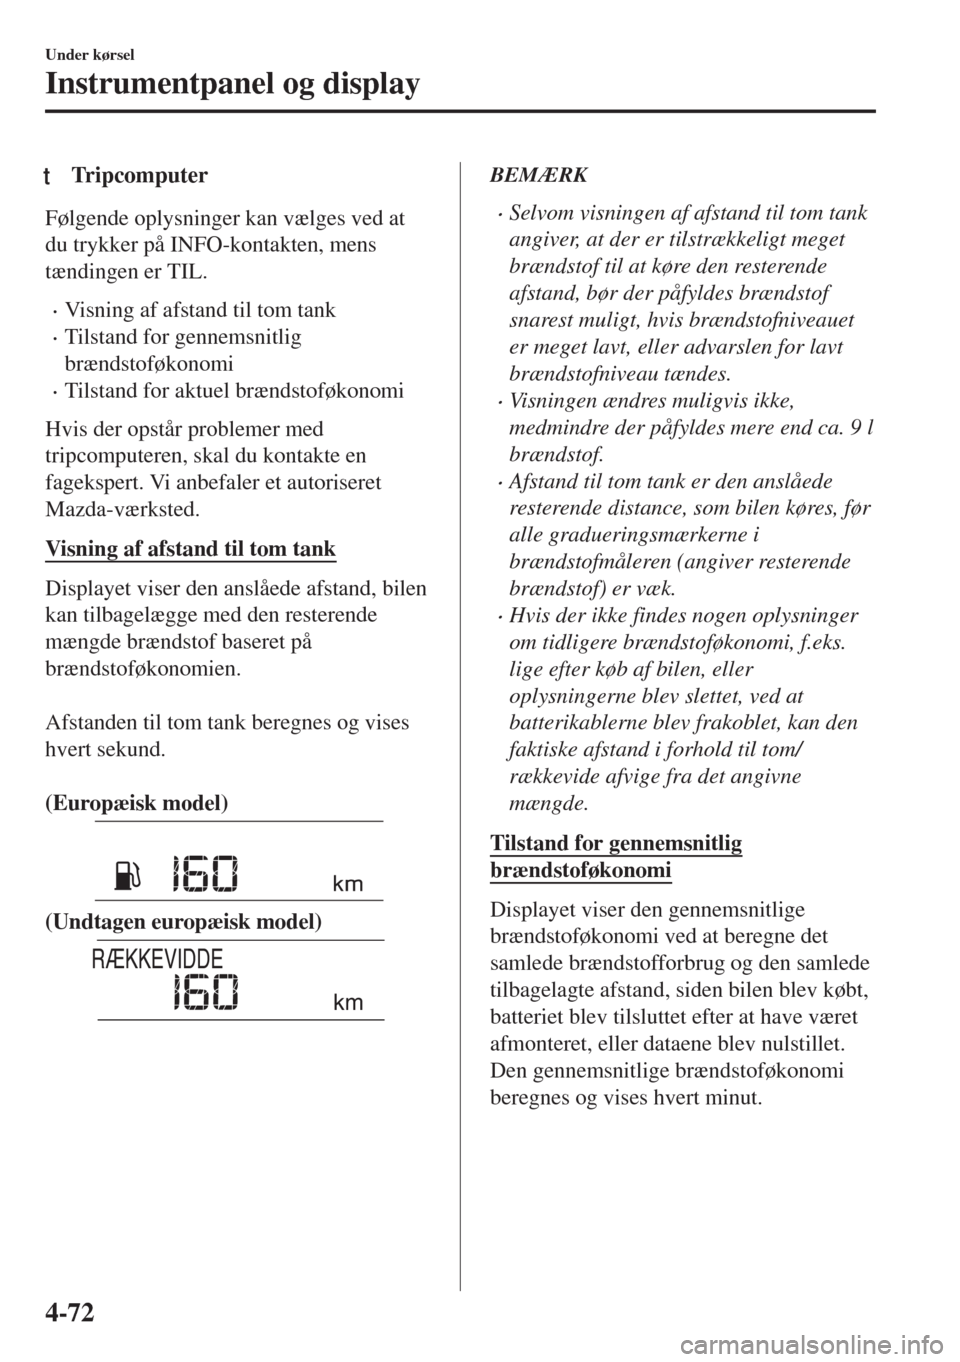 MAZDA MODEL 6 2018  Instruktionsbog (in Danish) tTripcomputer
Følgende oplysninger kan vælges ved at
du trykker på INFO-kontakten, mens
tændingen er TIL.
•Visning af afstand til tom tank
•Tilstand for gennemsnitlig
brændstoføkonomi
•Til